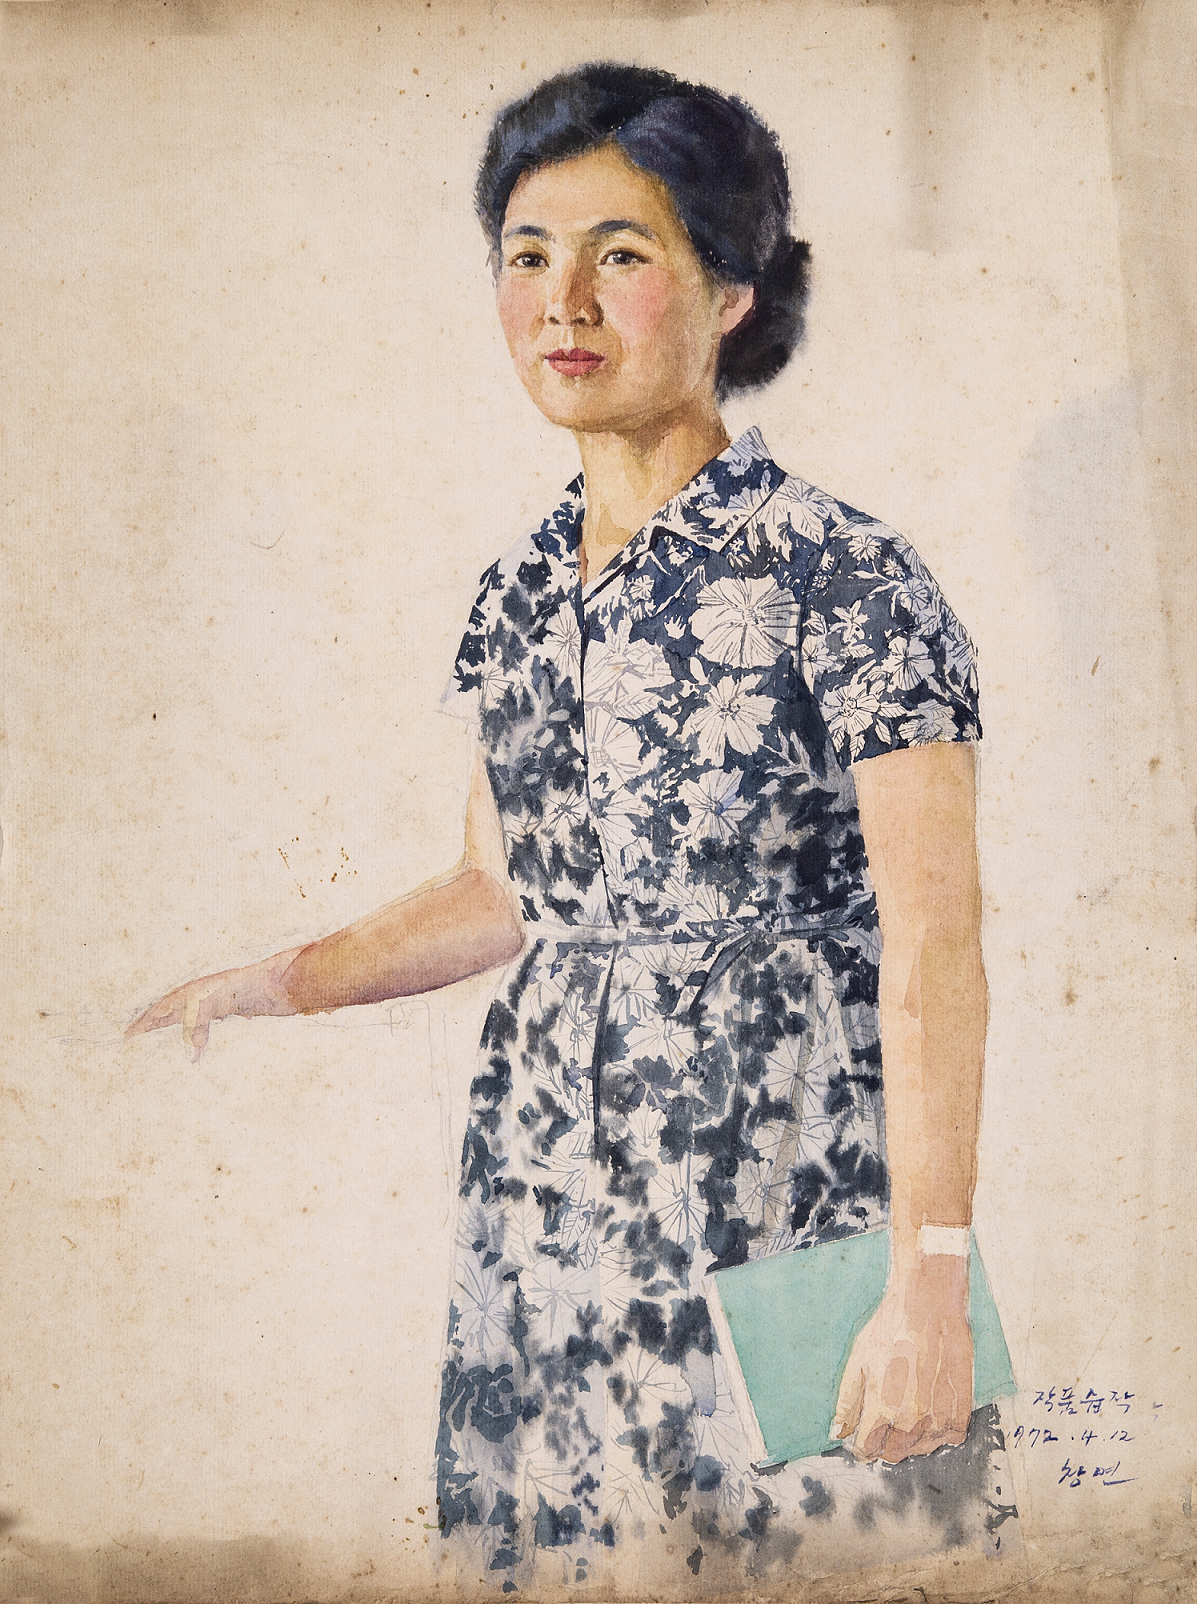 【朝鲜老画】咸昌渊 技术学员 1972年 54 x 40cm